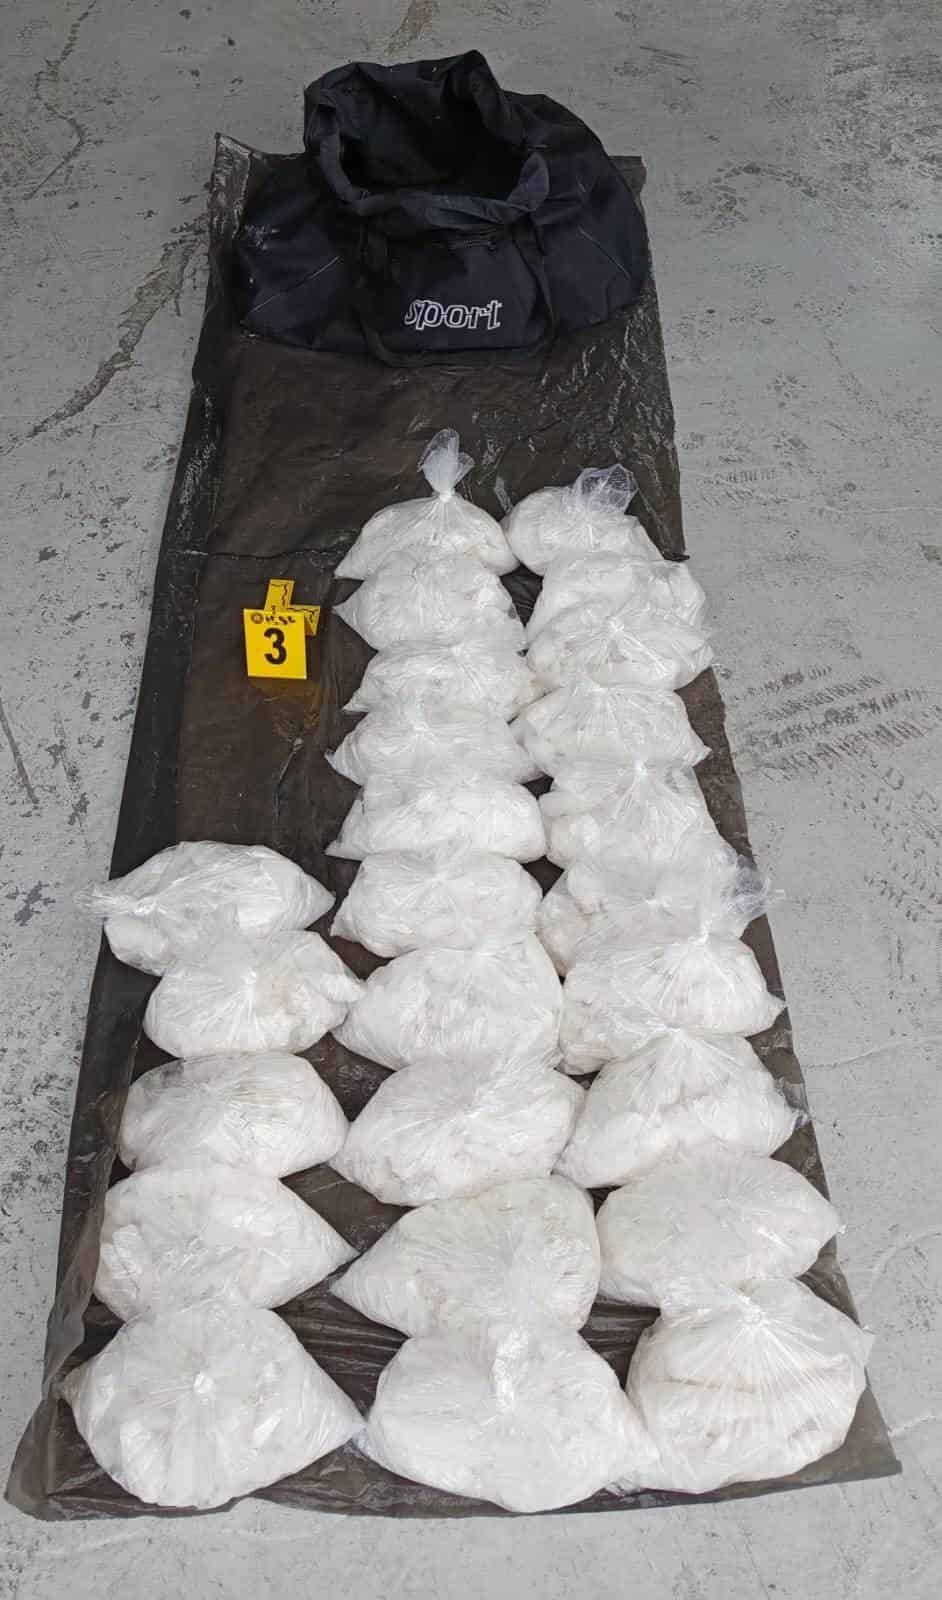 Más de 100 kilos de cocaína con un valor de por lo menos un millón de 300 pesos fueron asegurados en dos vehículos por la Agencia Estatal de Investigaciones, tras la detención de cuatro personas en el centro de Monterrey.